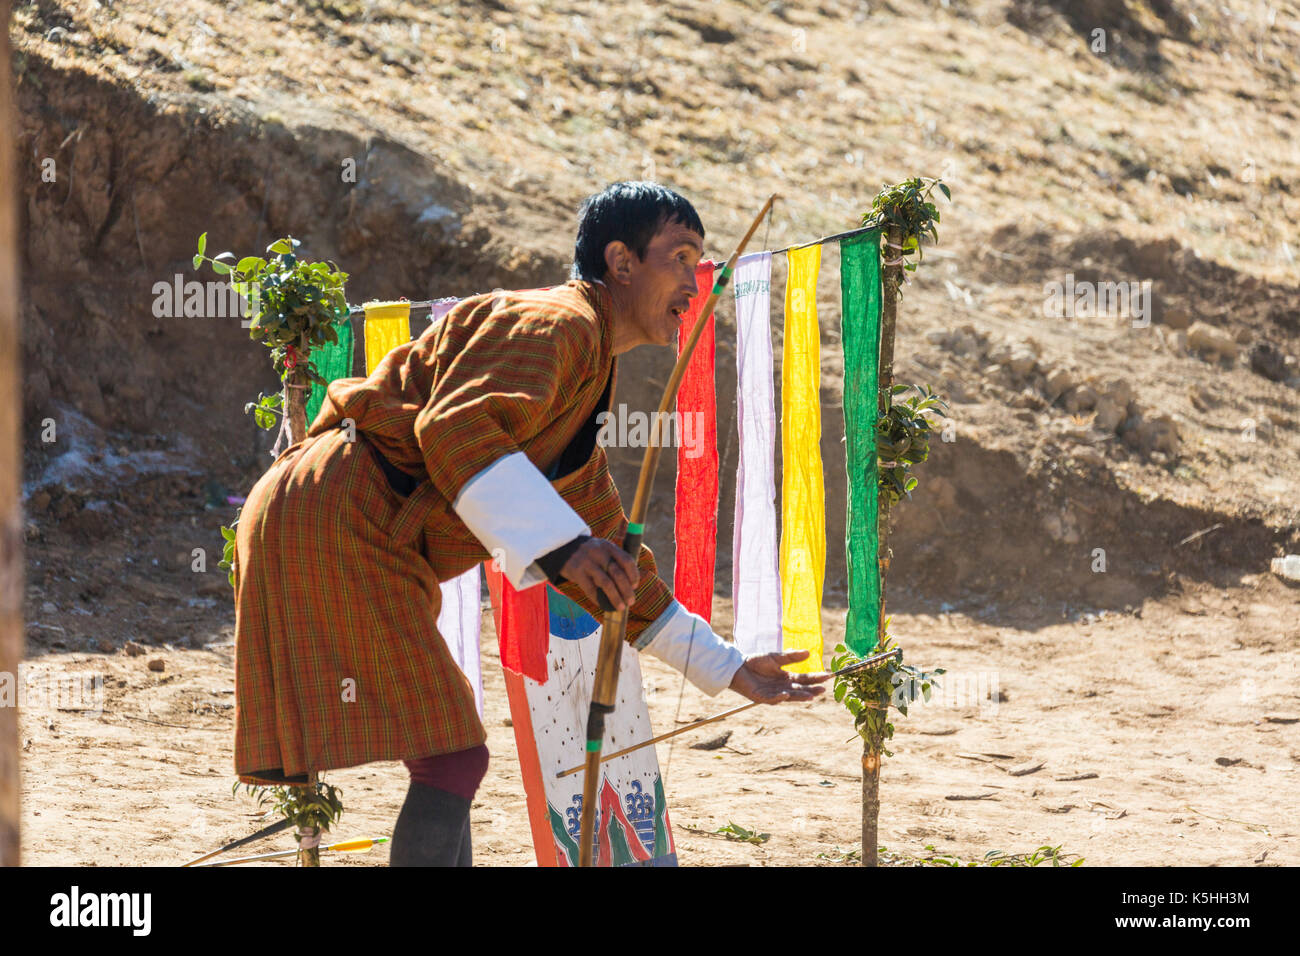 La vallée de Phobjikha, western bhutan - février 22, 2015 : local tir à l'competiion en vallée de Phobjikha. tir à l'arc est le sport national du Bhoutan. Banque D'Images